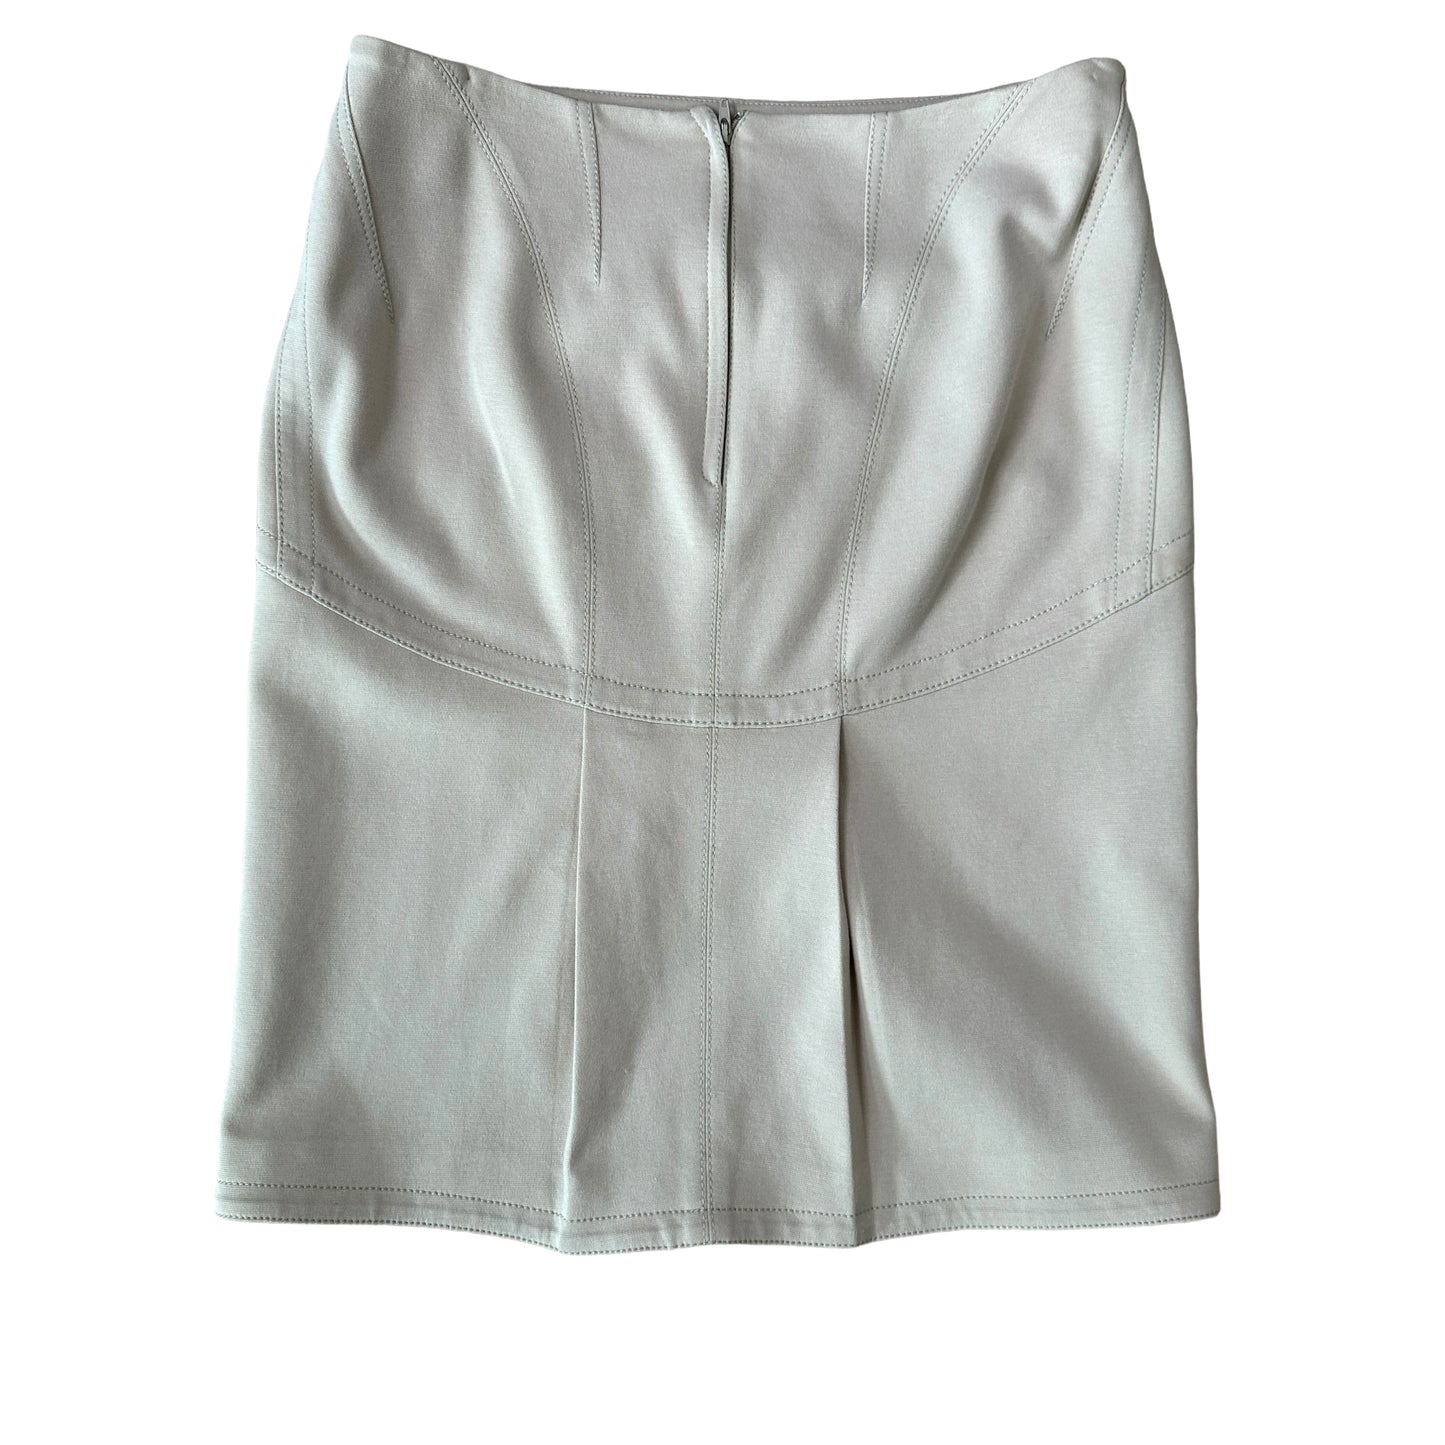 Beige Vintage Mini Skirt - M